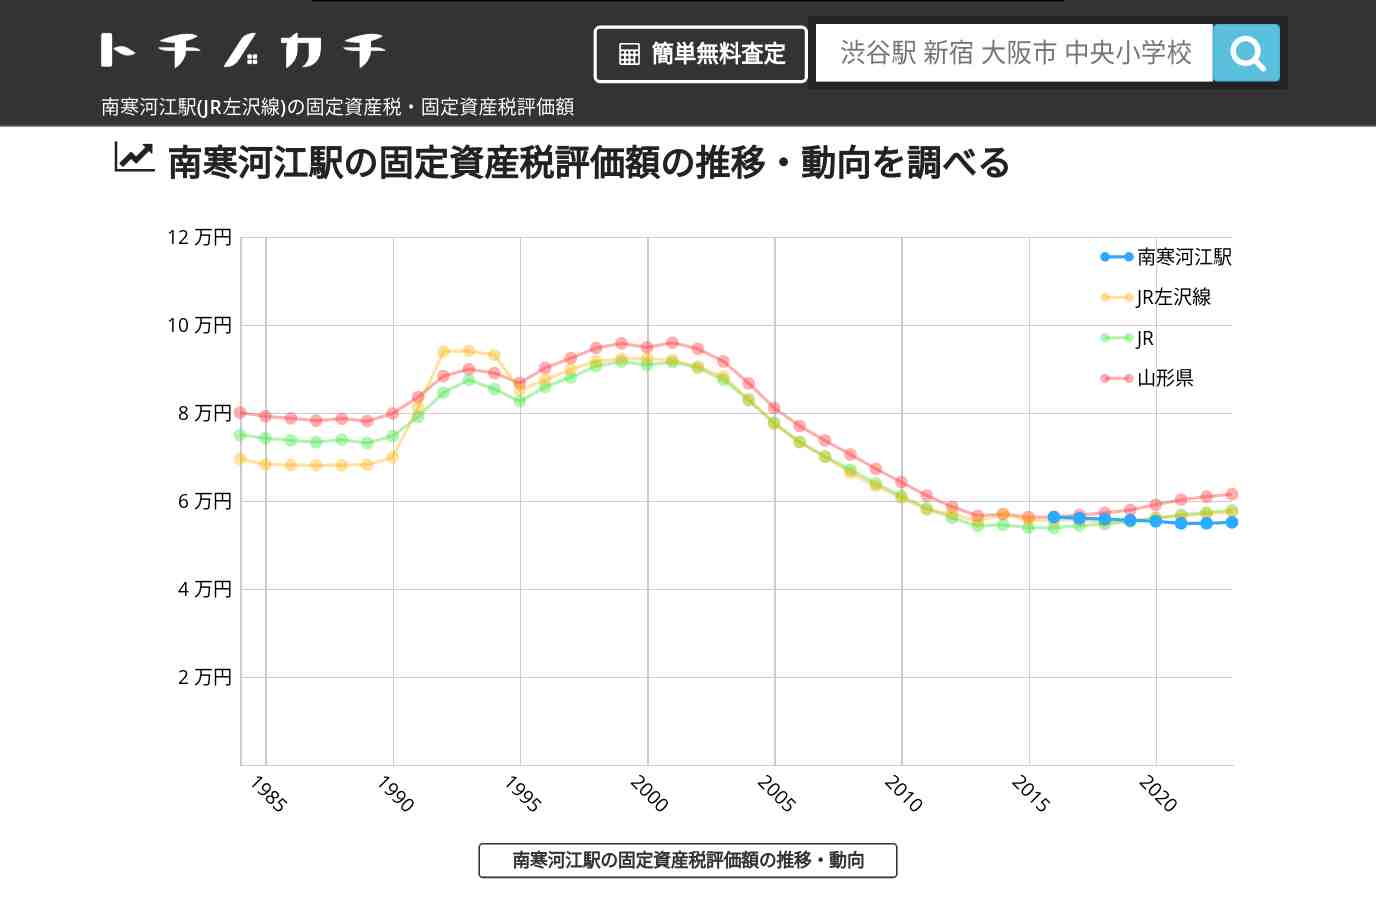 南寒河江駅(JR左沢線)の固定資産税・固定資産税評価額 | トチノカチ